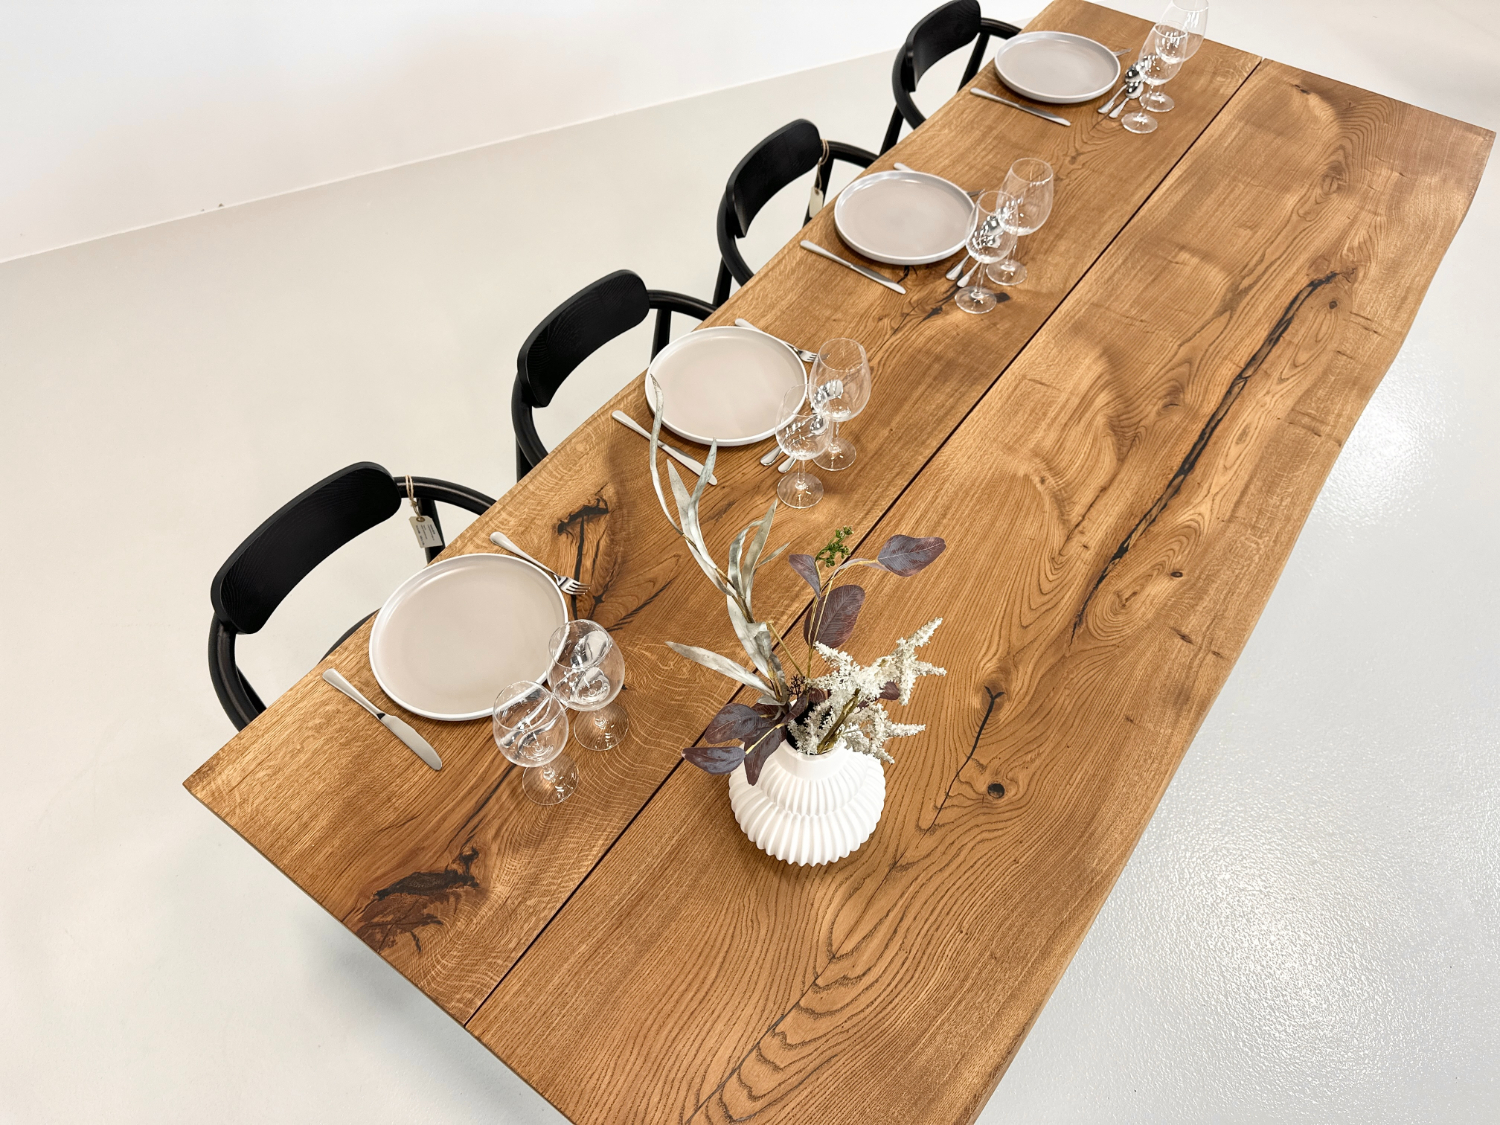 hensigt strategi cafeteria Plankebord eg 2 planker 250 x 95-100 cm - ByMAIN